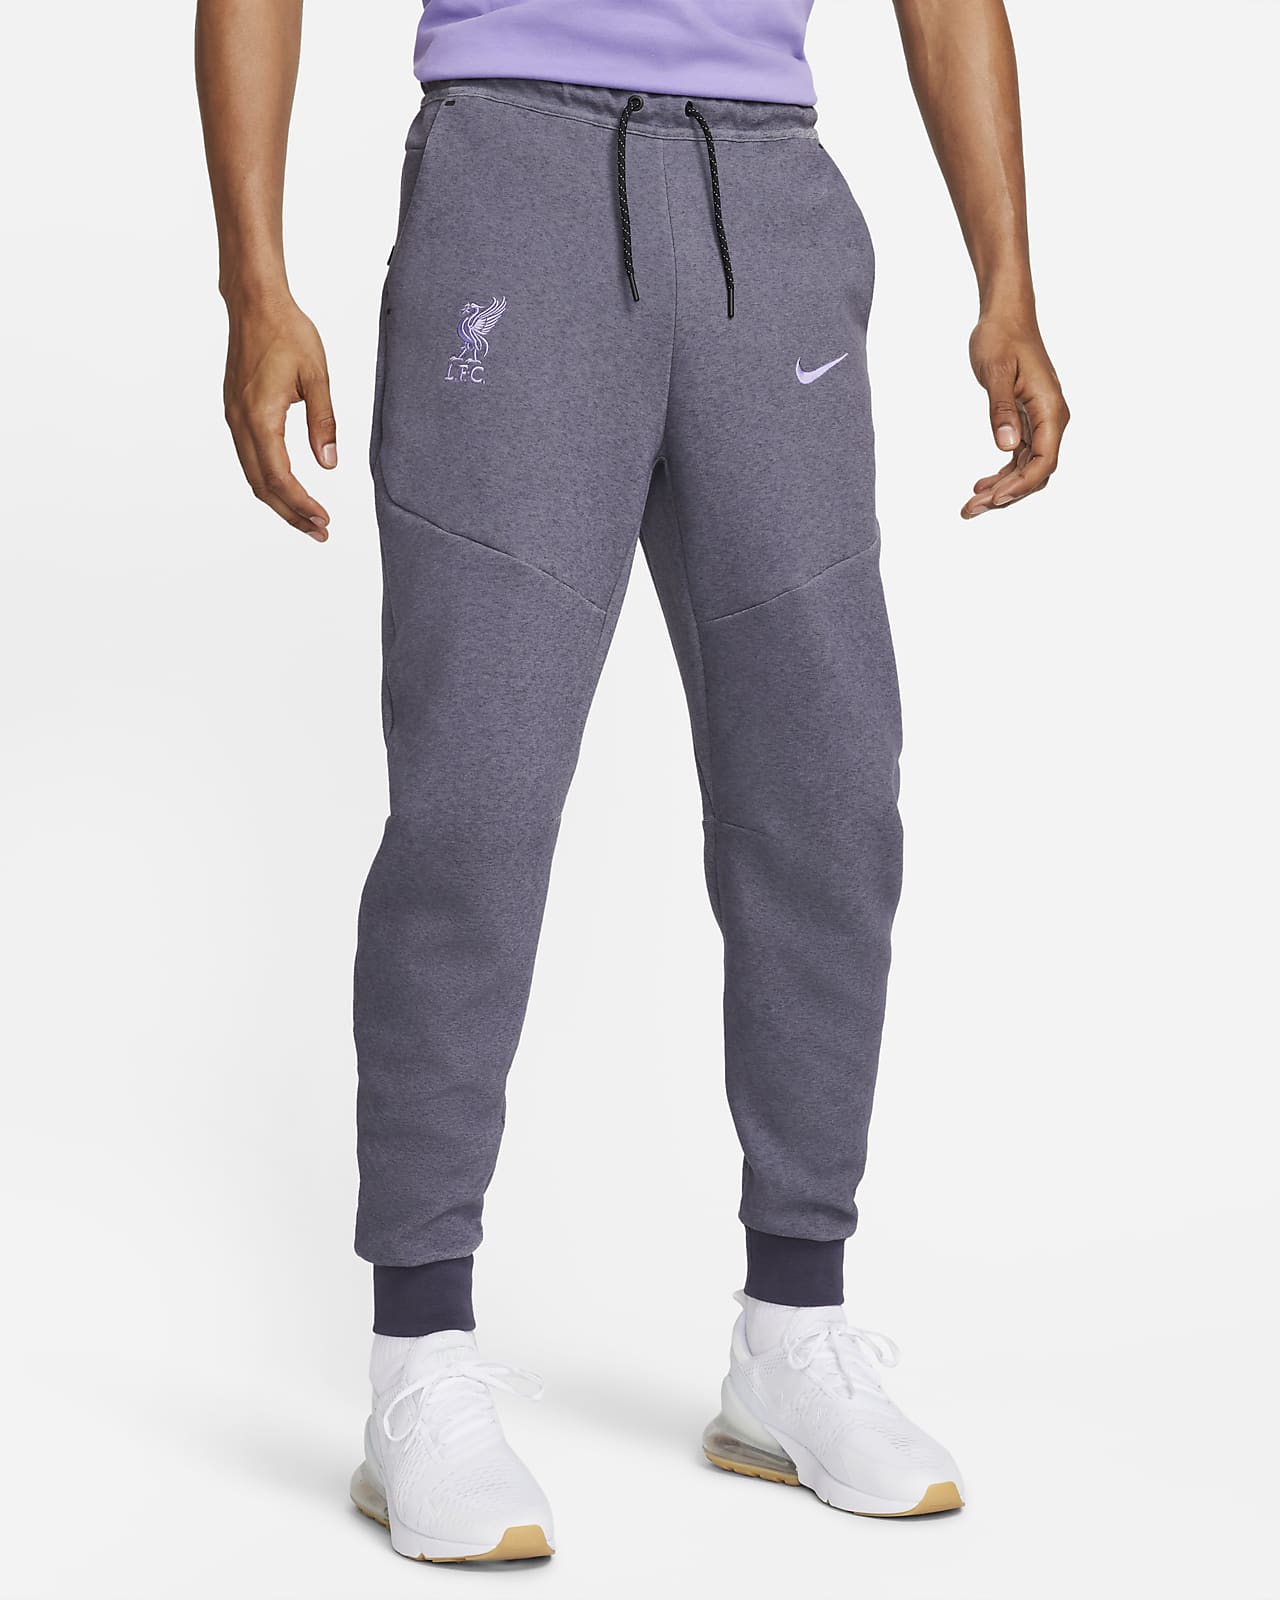 Ανδρικό ποδοσφαιρικό παντελόνι φόρμας Nike εναλλακτικής εμφάνισης Λίβερπουλ Tech Fleece